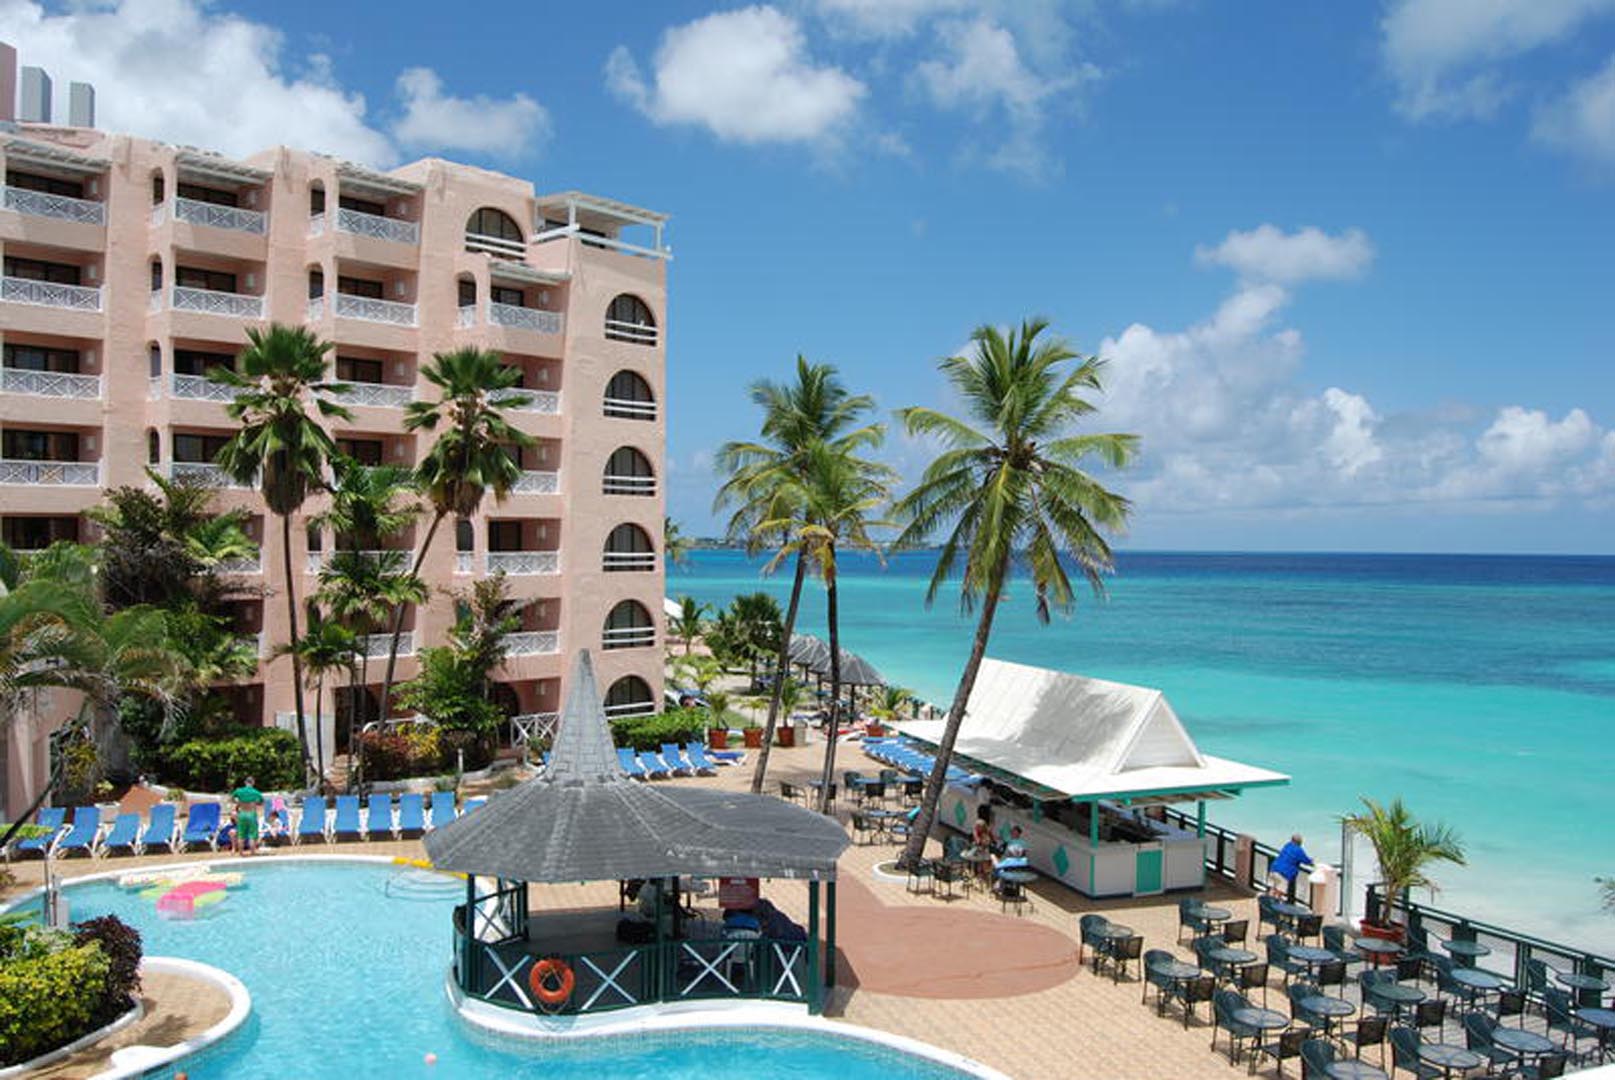 Barbados Beach Club in Hotels Caribbean Barbados 